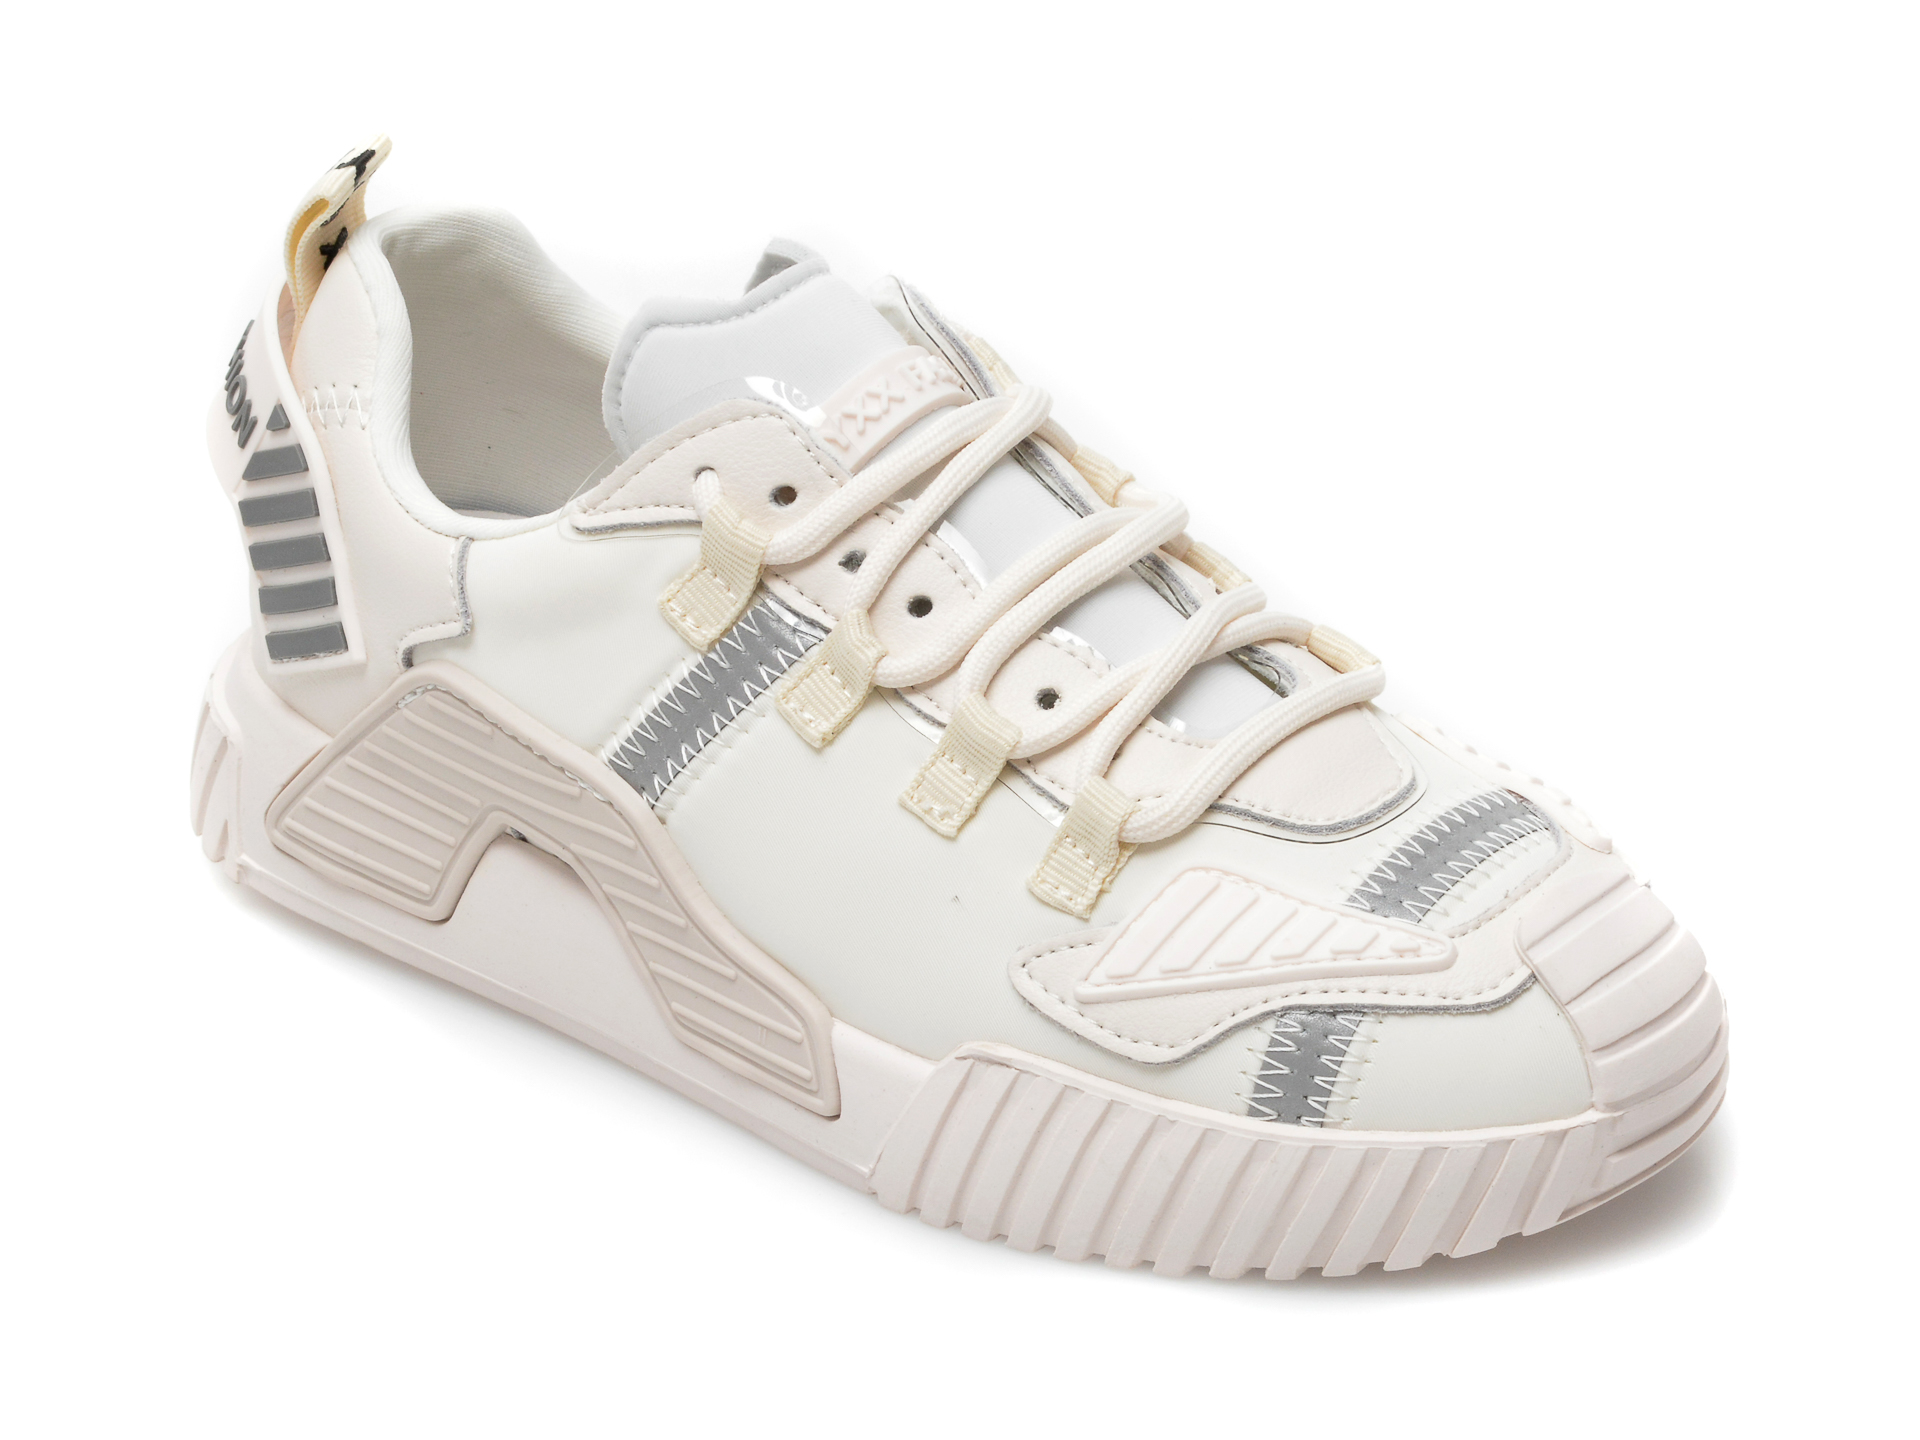 Pantofi sport GRYXX albi, 2081, din material textil si piele naturala Gryxx